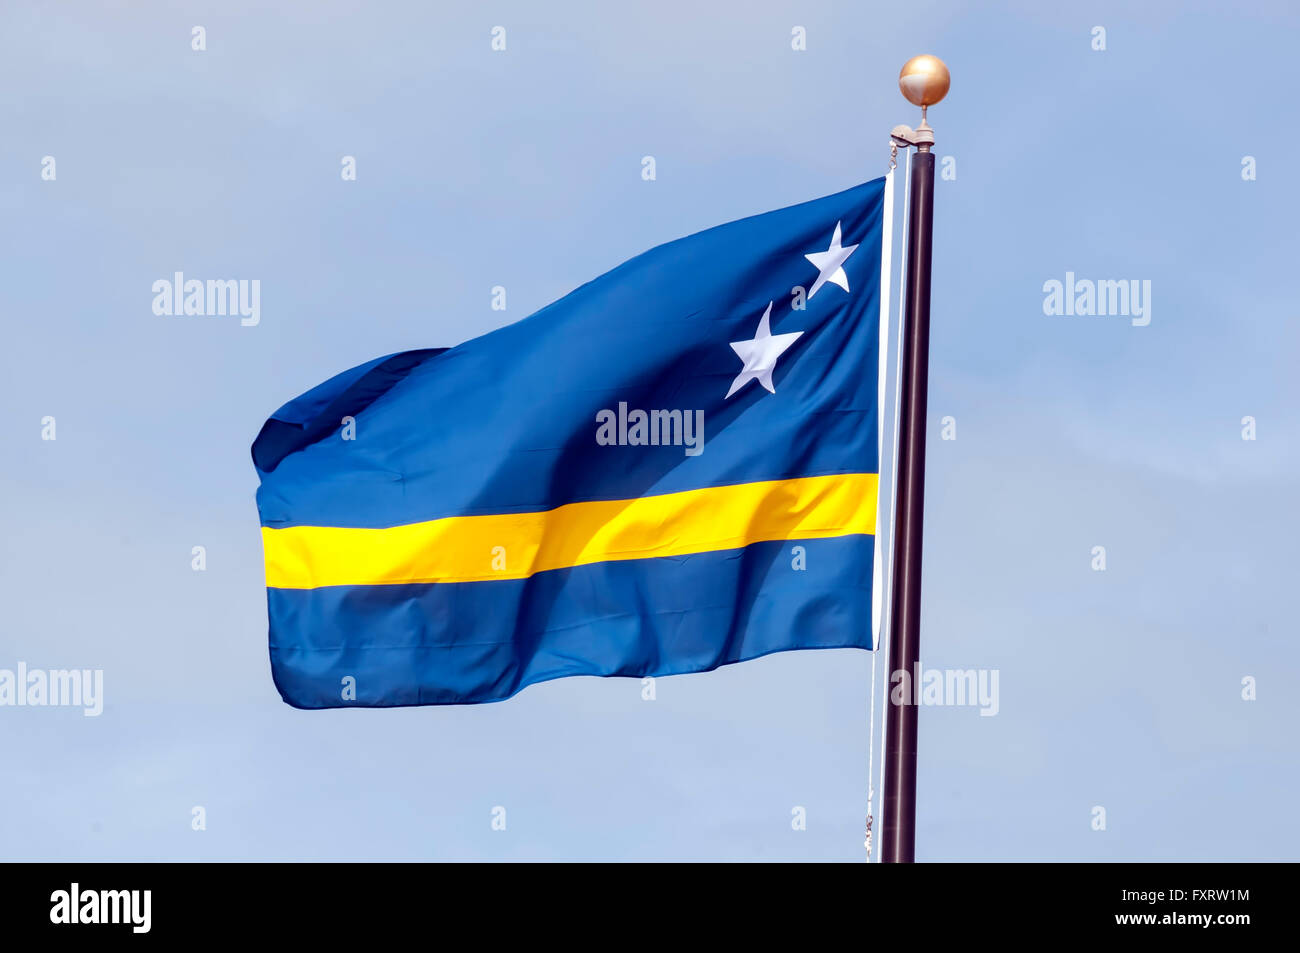 Drapeau national avec curaçao bleu symbolisant la mer des Caraïbes et 2 étoile pour Curaçao et Klein Curaçao Banque D'Images